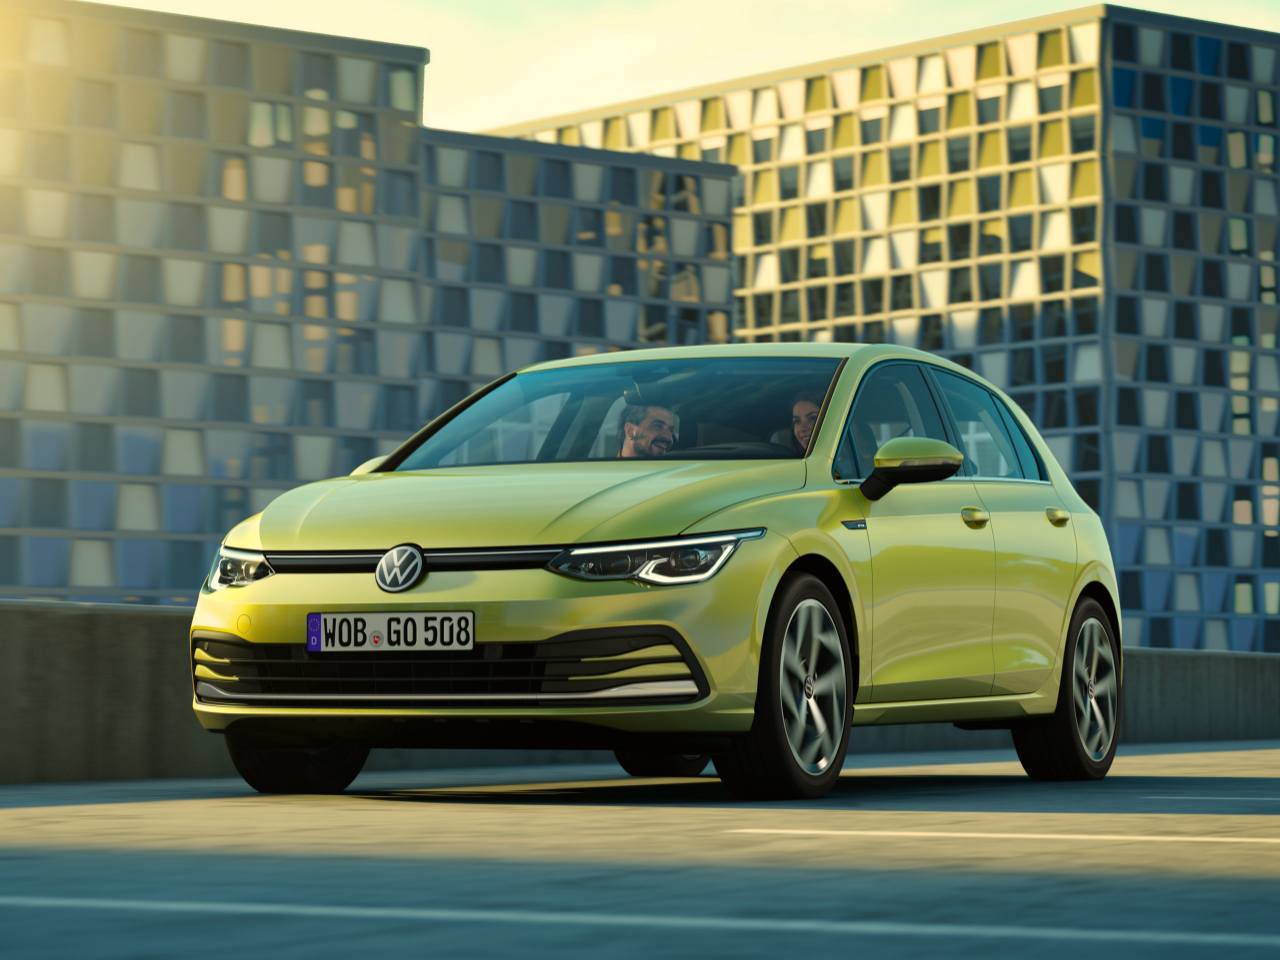 Descubre la fecha de lanzamiento del último Volkswagen: ¿Cuándo fue y qué novedades trajo?